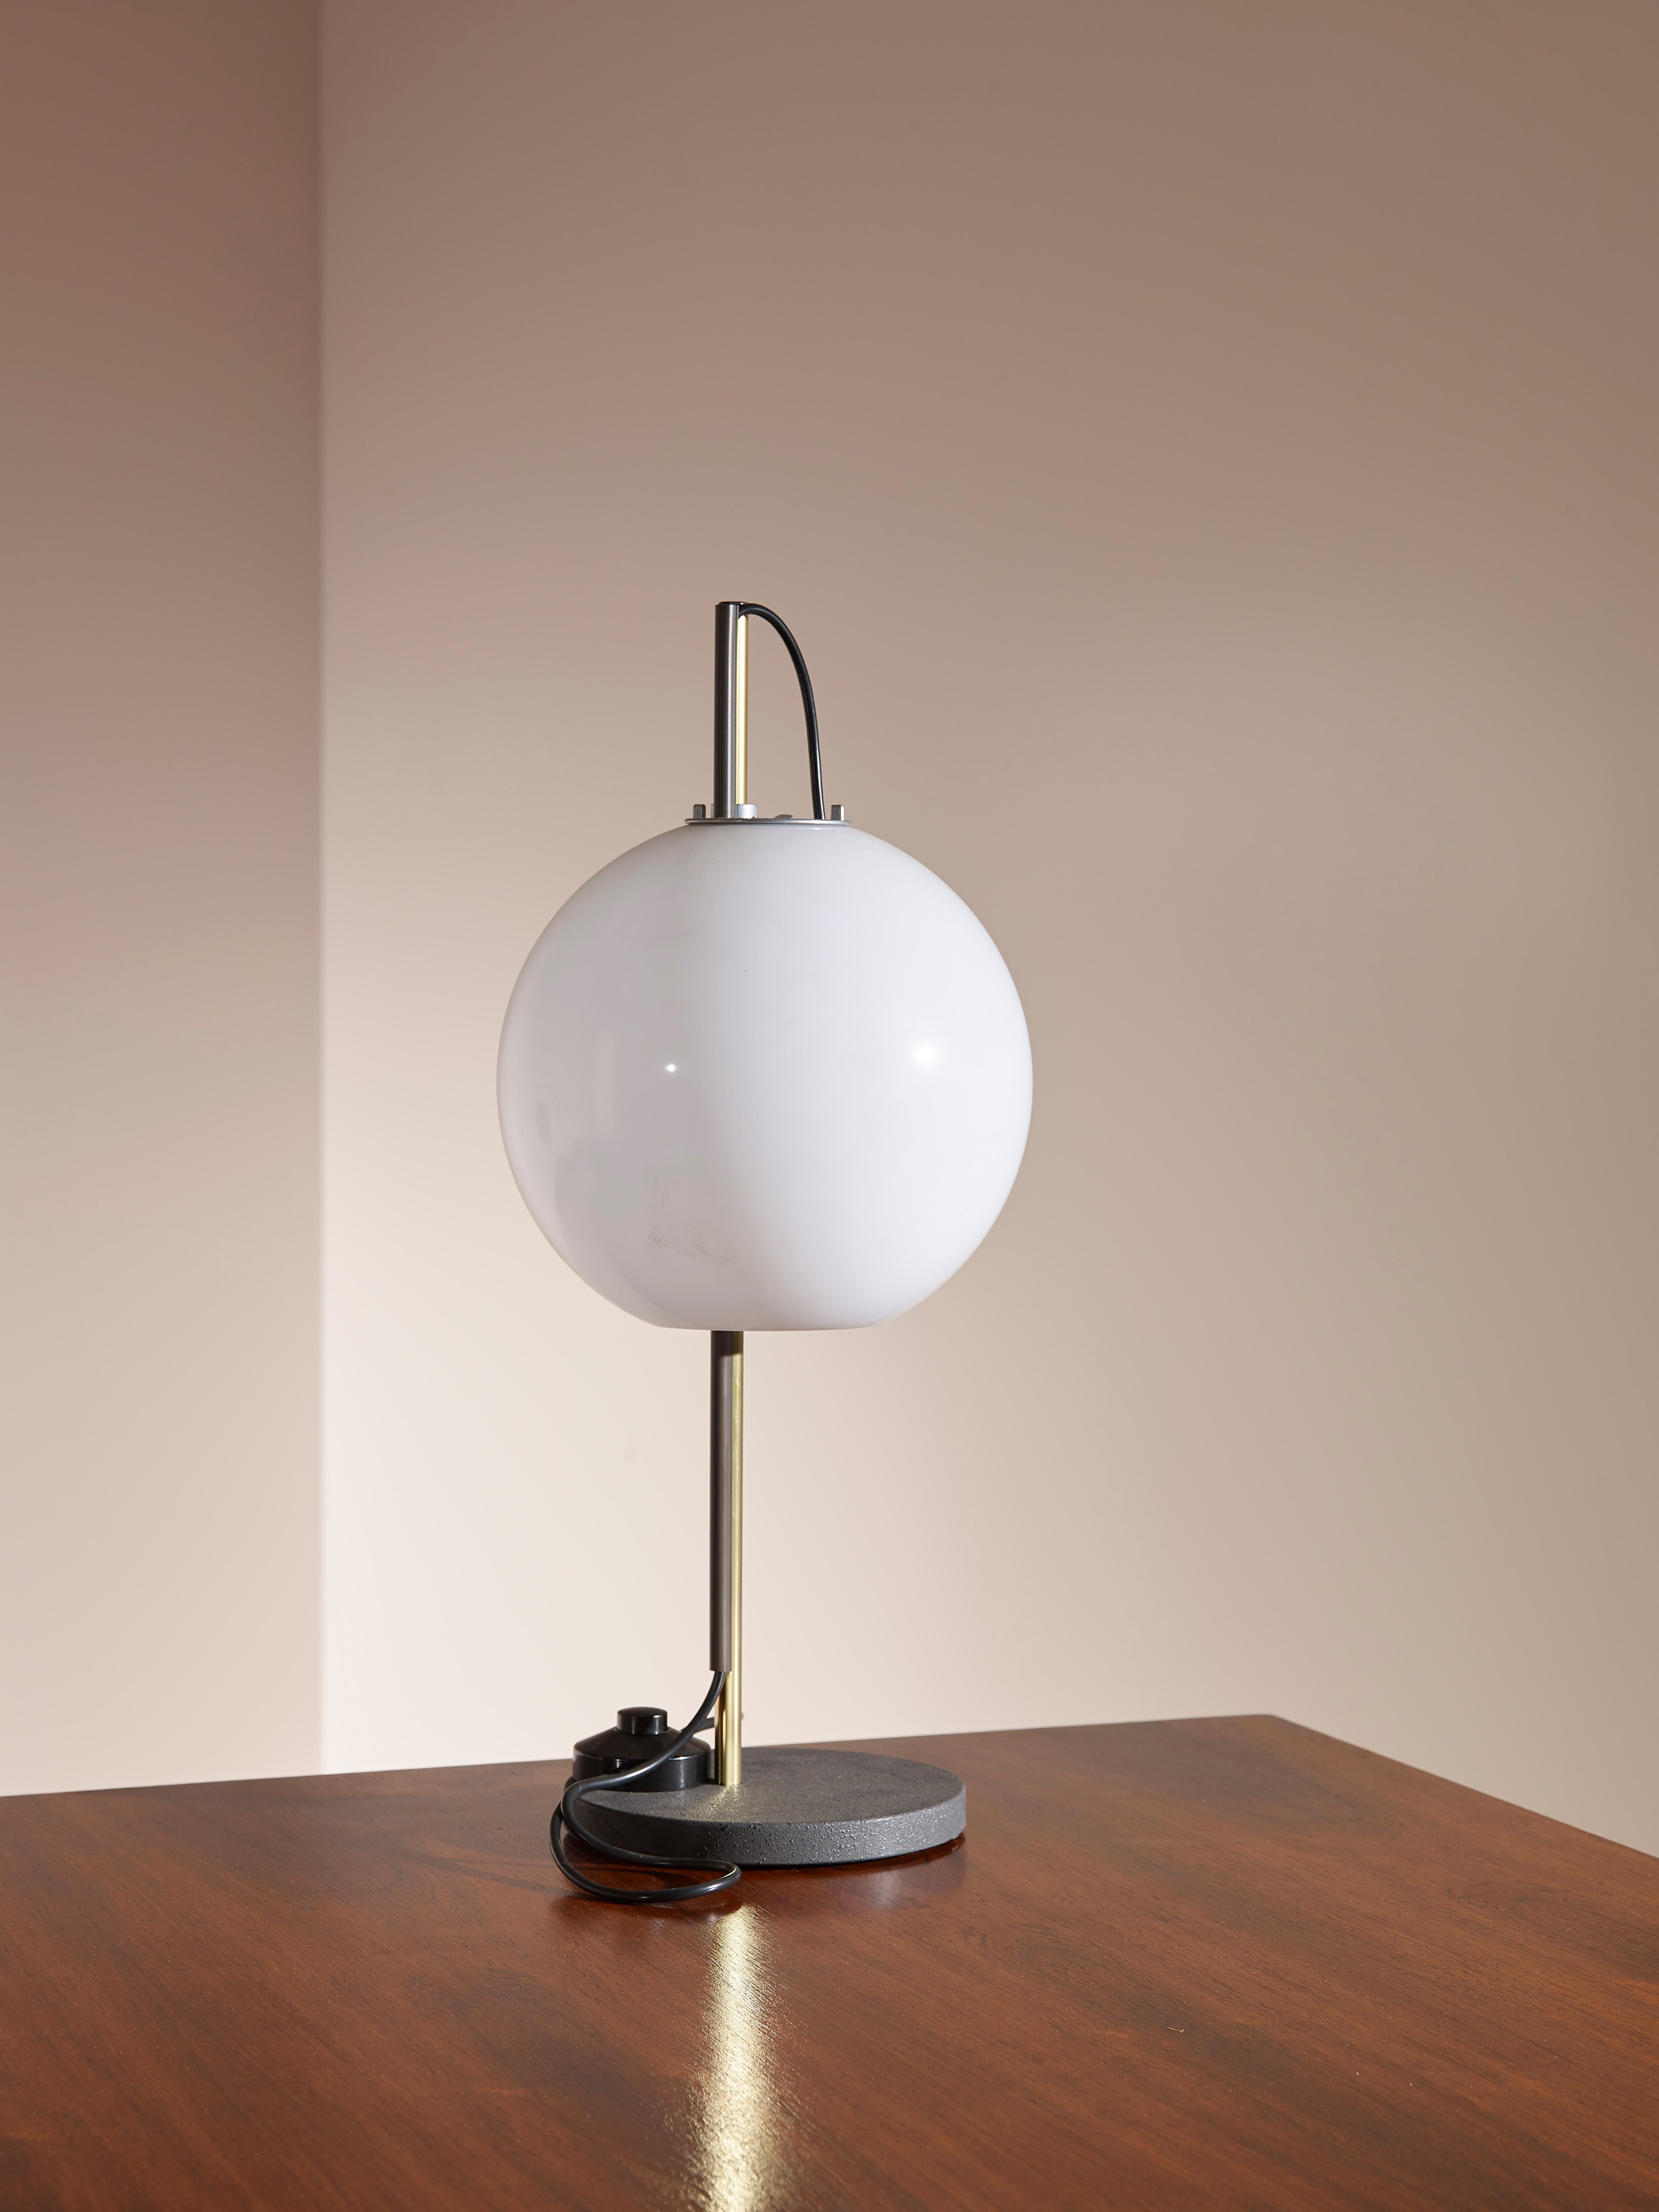 Cette lampe de table ''Aggregato'' à hauteur d'abat-jour réglable a été conçue par Enzo Mari et Giancarlo Fassina et produite par le fabricant italien Artemide dans les années 1970. 

Il s'agit ici d'une configuration très rare : L'abat-jour boule